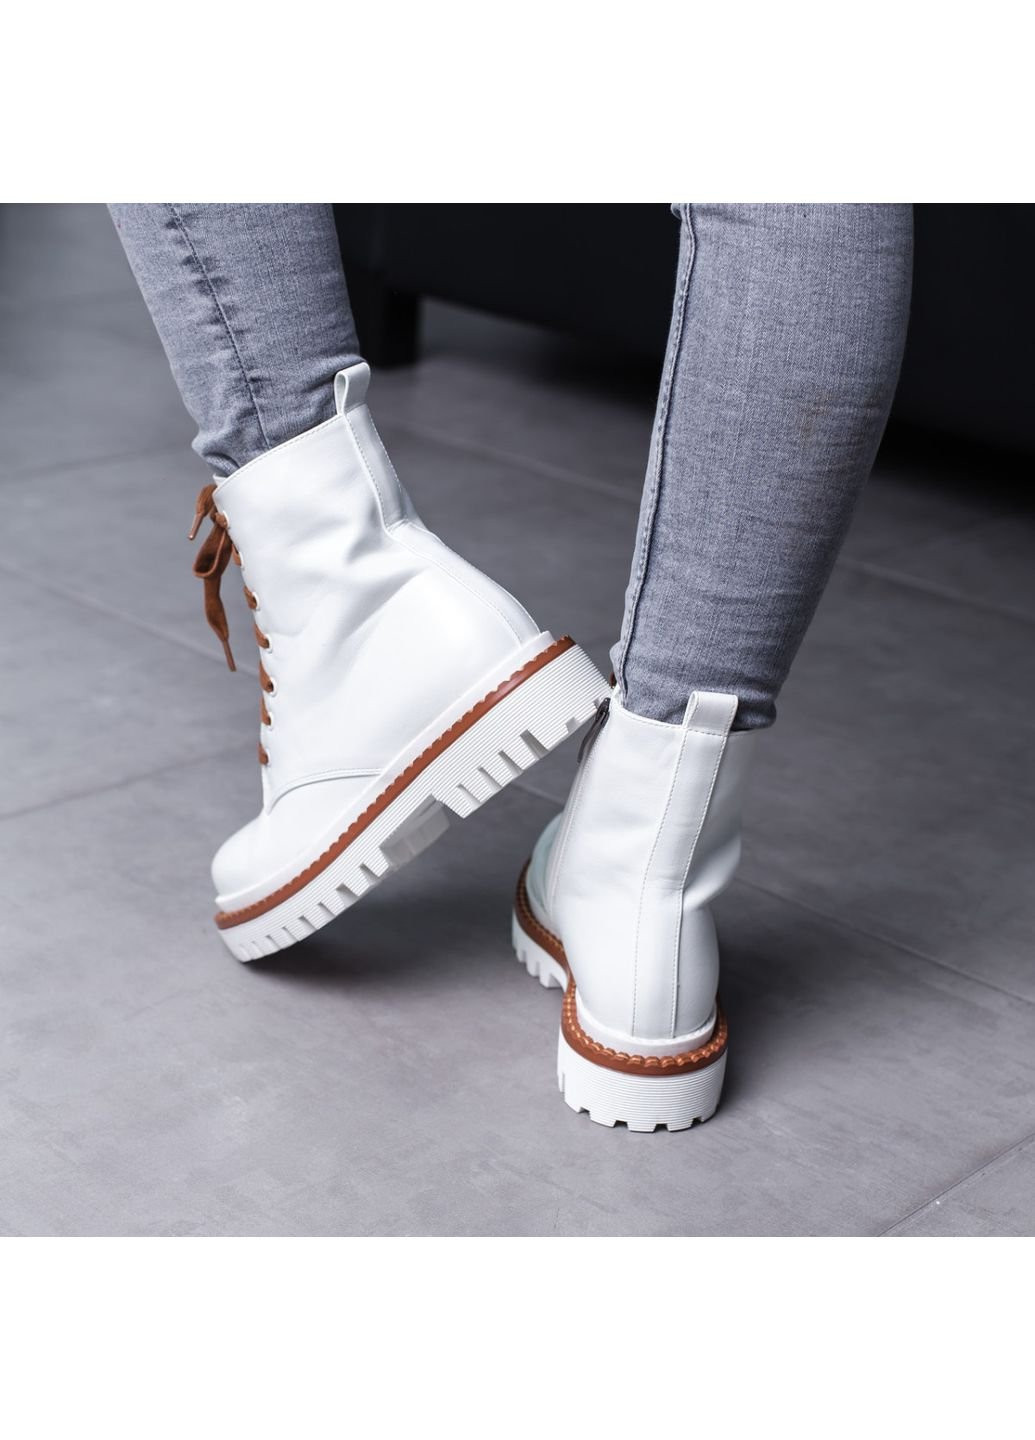 Осенние ботинки женские chrisley 3467 40 25,5 см белый Fashion из искусственной кожи